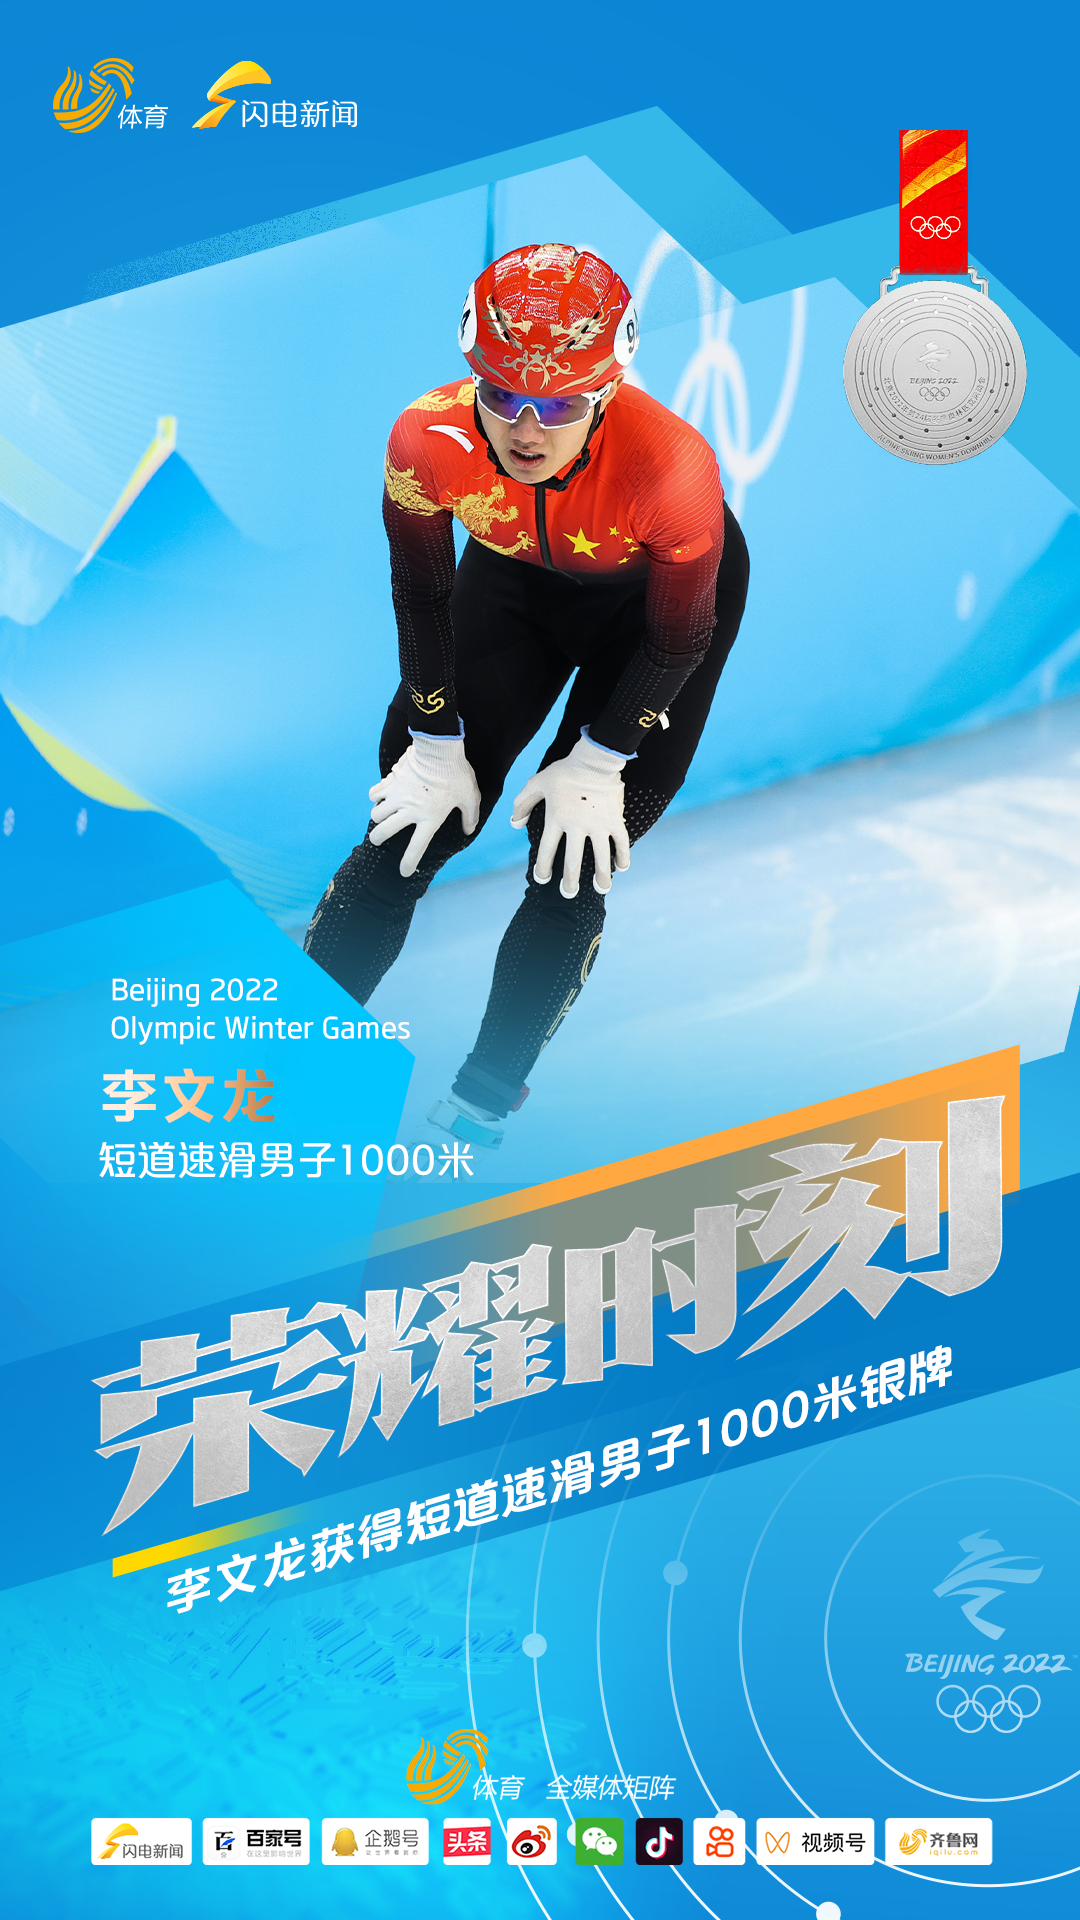 李文龙夺得山东首枚冬奥会奖牌 11岁进入青岛短道速滑队